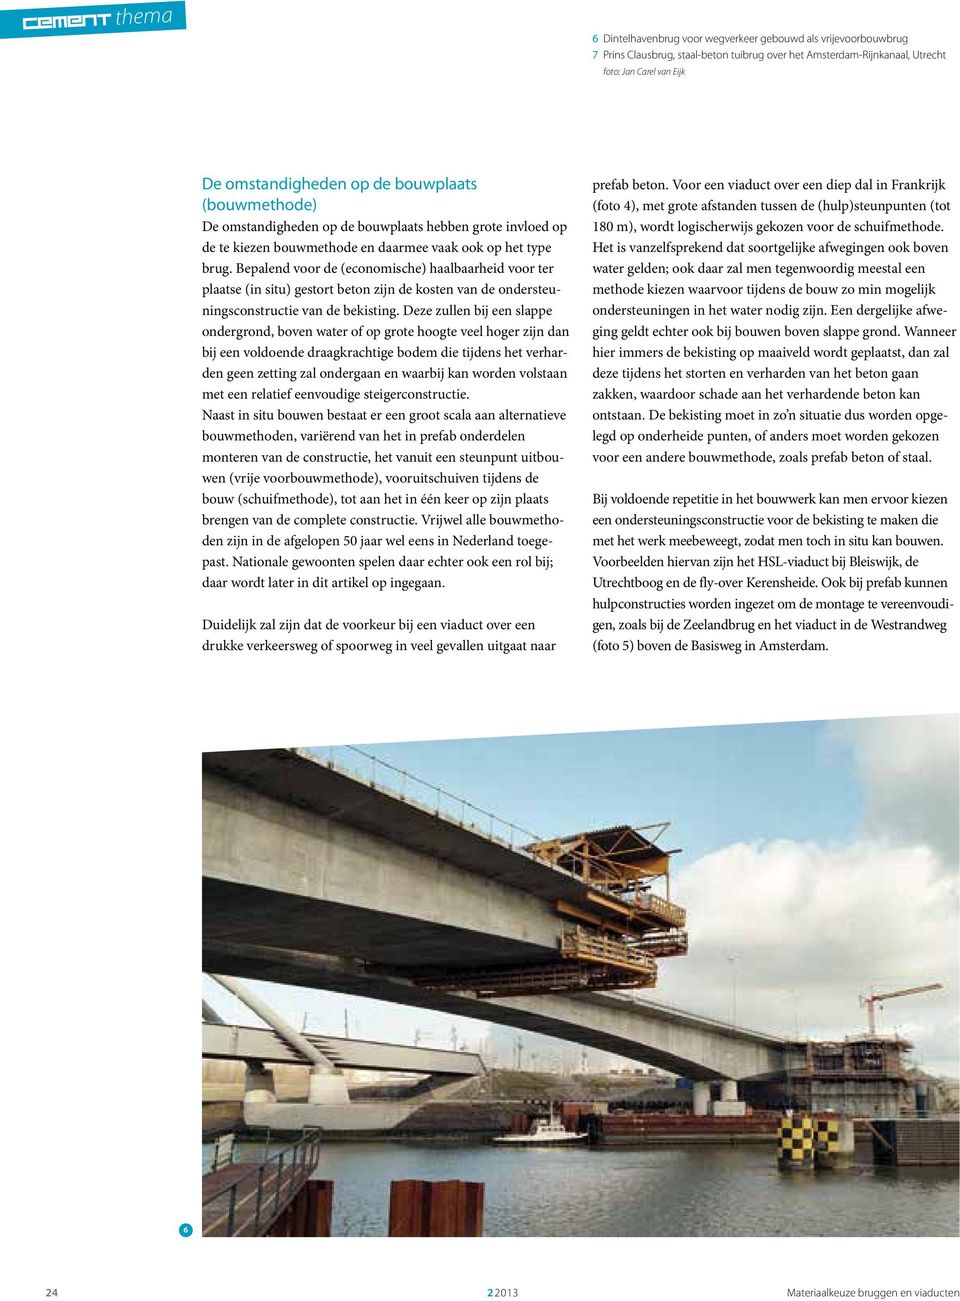 Bepalend voor de (economische) haalbaarheid voor ter plaatse (in situ) gestort beton zijn de kosten van de ondersteuningsconstructie van de bekisting.